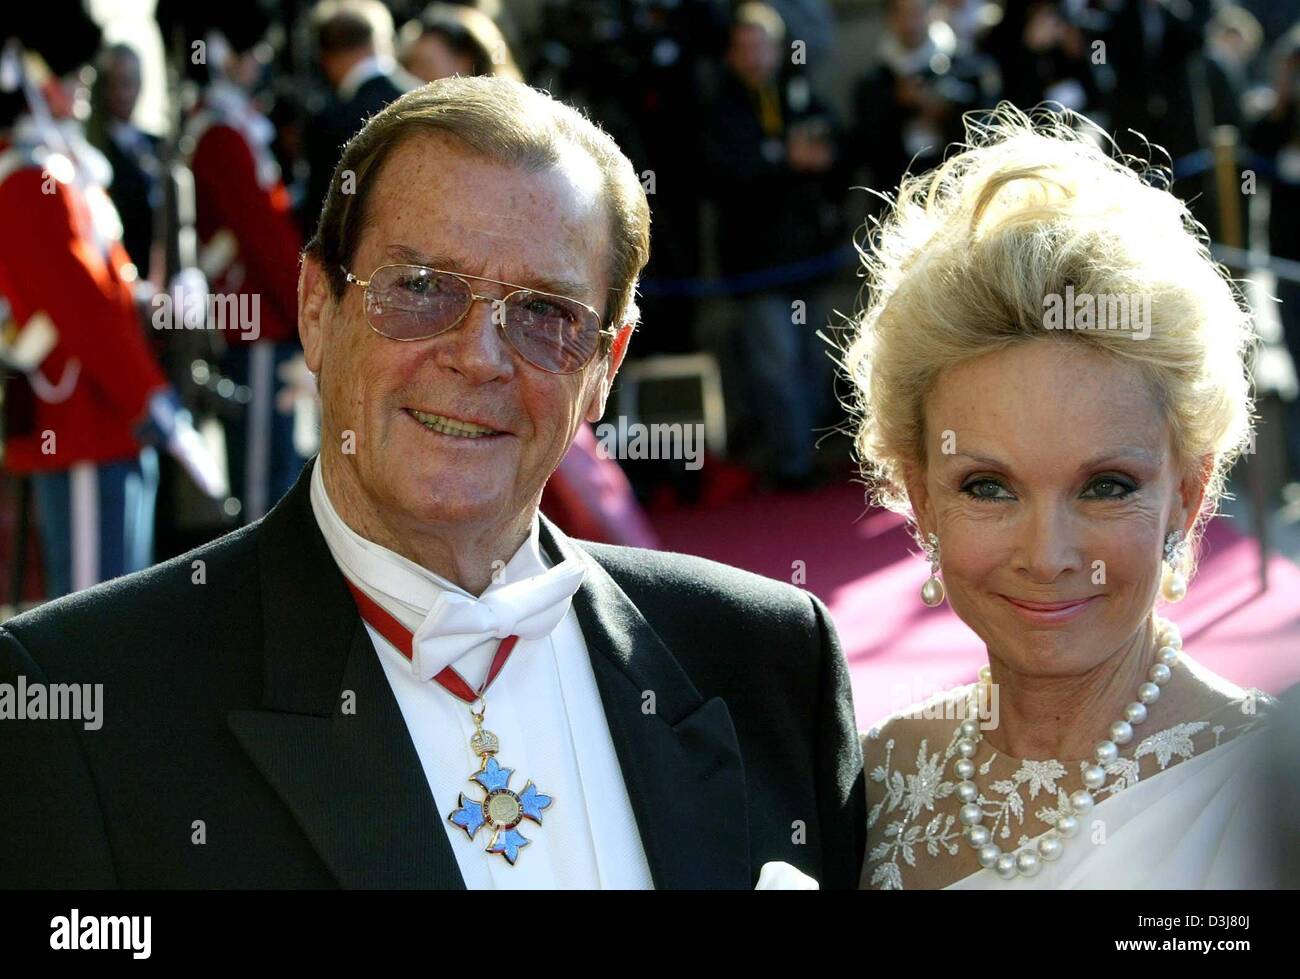 (Dpa) - am Vorabend der Hochzeit von Kronprinz Frederik von Dänemark und Mary Donaldson, britische Schauspieler Sir Roger Moore und seine Frau Lady Kristian Moore kommen für eine Gala am Königlichen Theater in Kopenhagen, 13. Mai 2004. Stockfoto